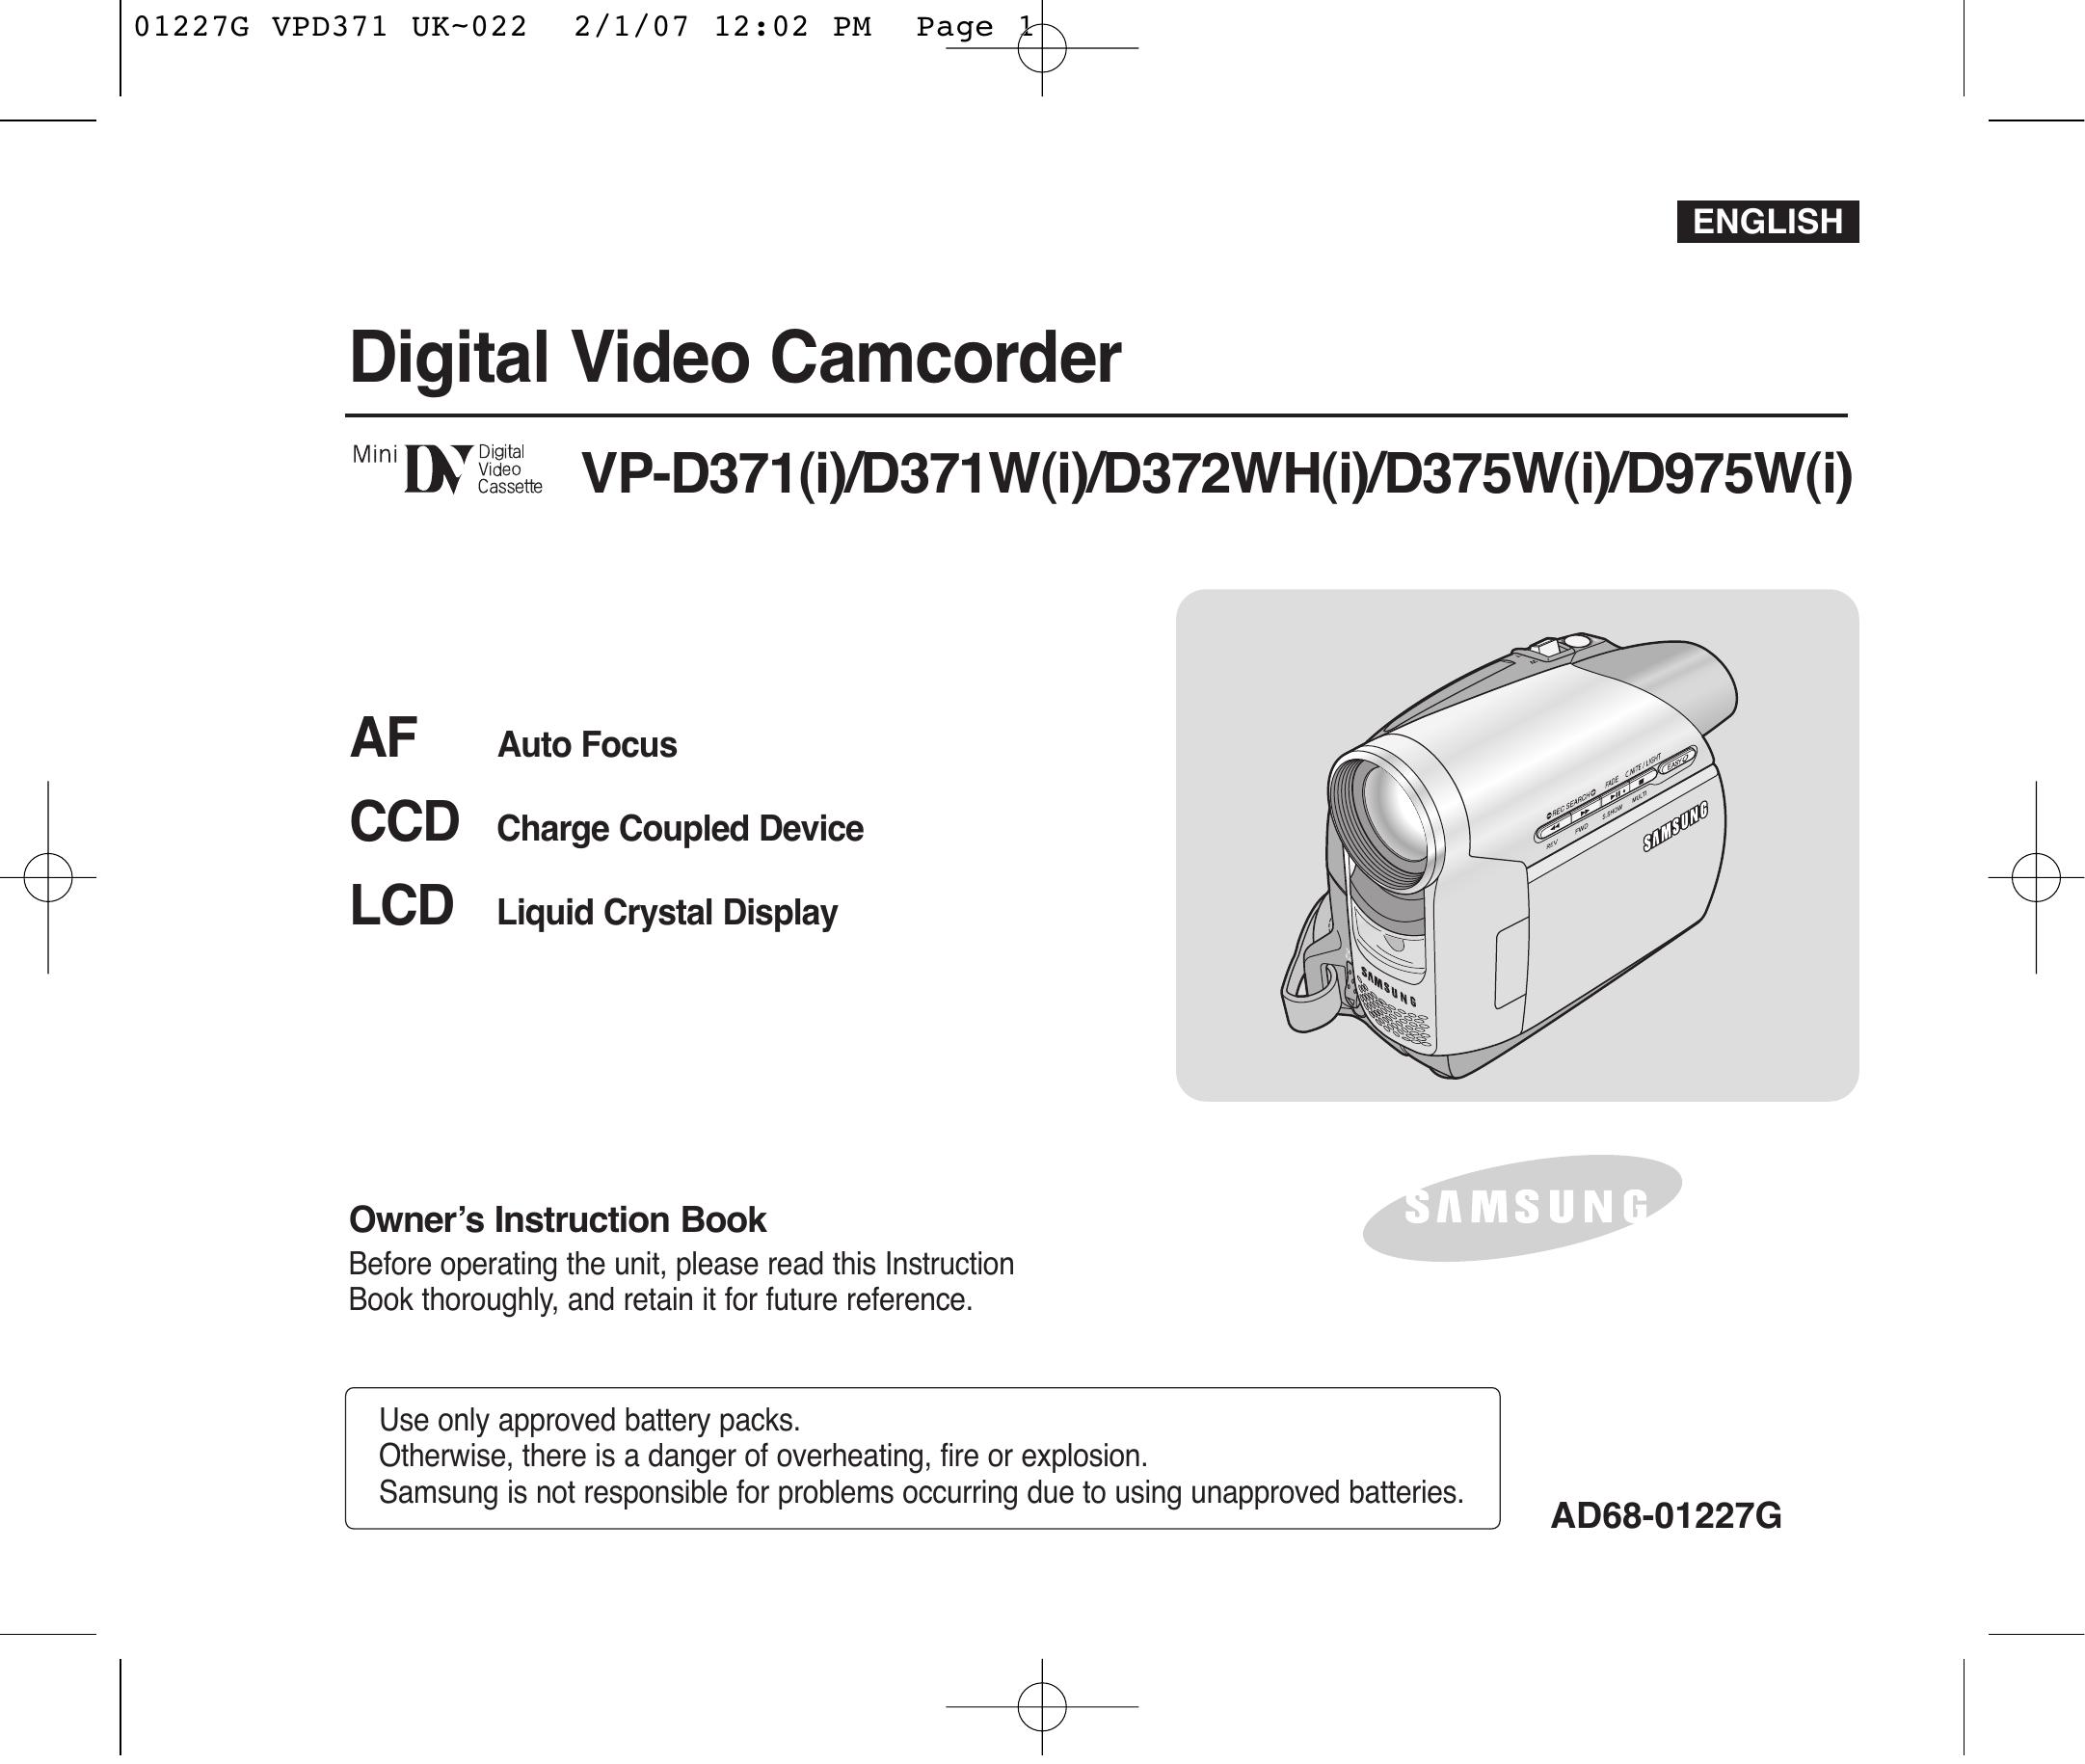 Samsung D372WH(i) Camcorder User Manual